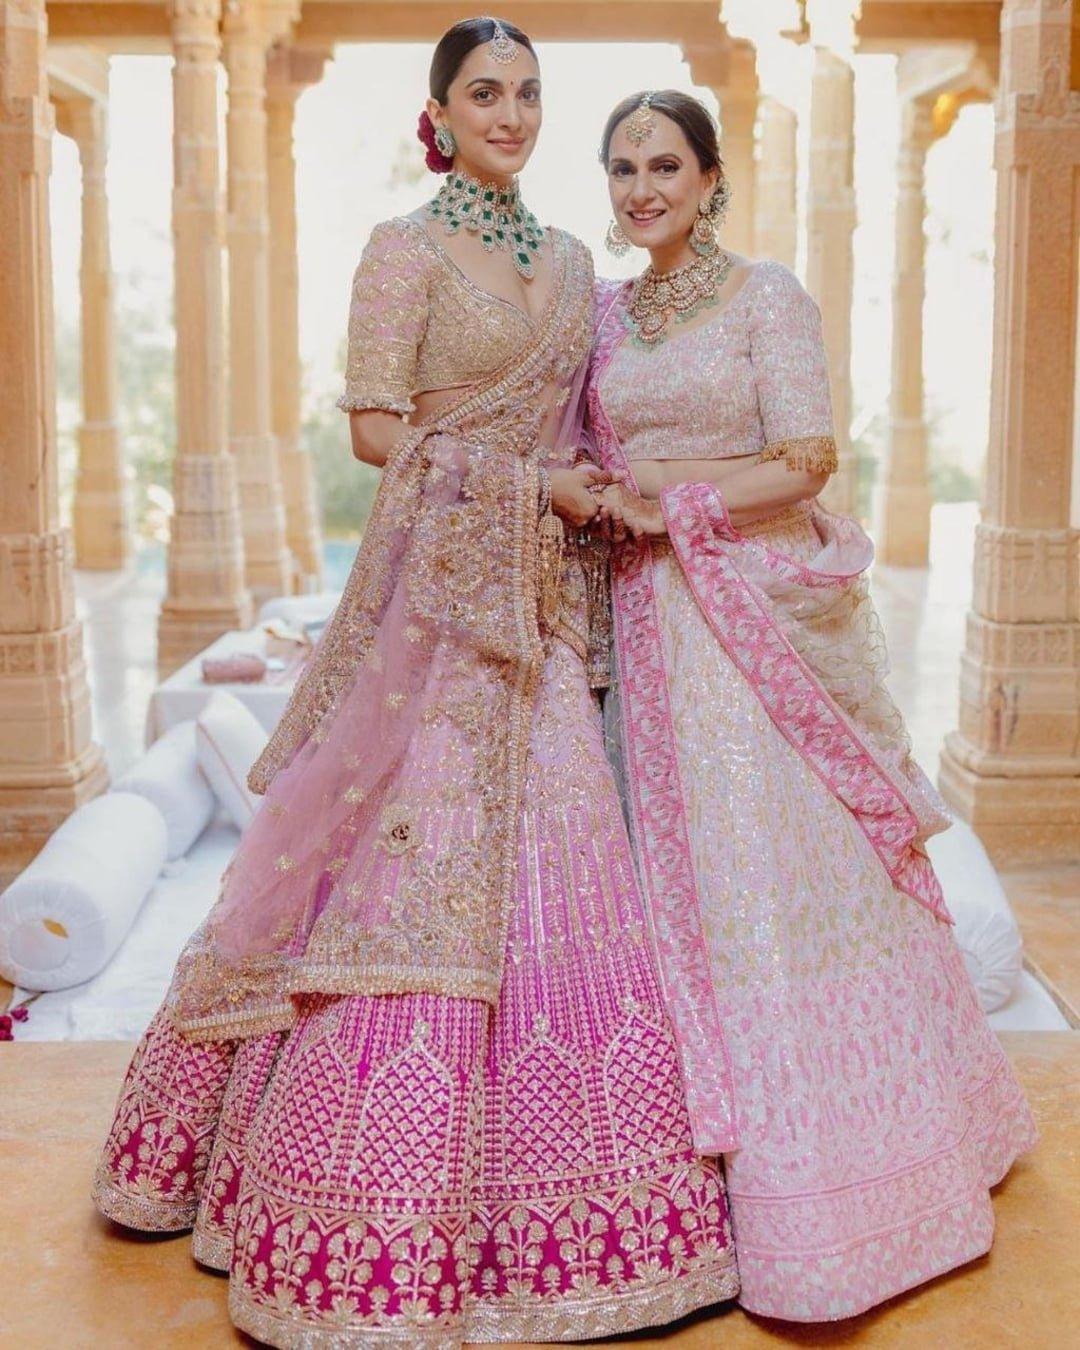 Manish malhotra Inspired Bridal Lehenga Choli, Pakistani/ Indian Wedding High Quality Bridal set for women’s - Diana's Fashion Factory